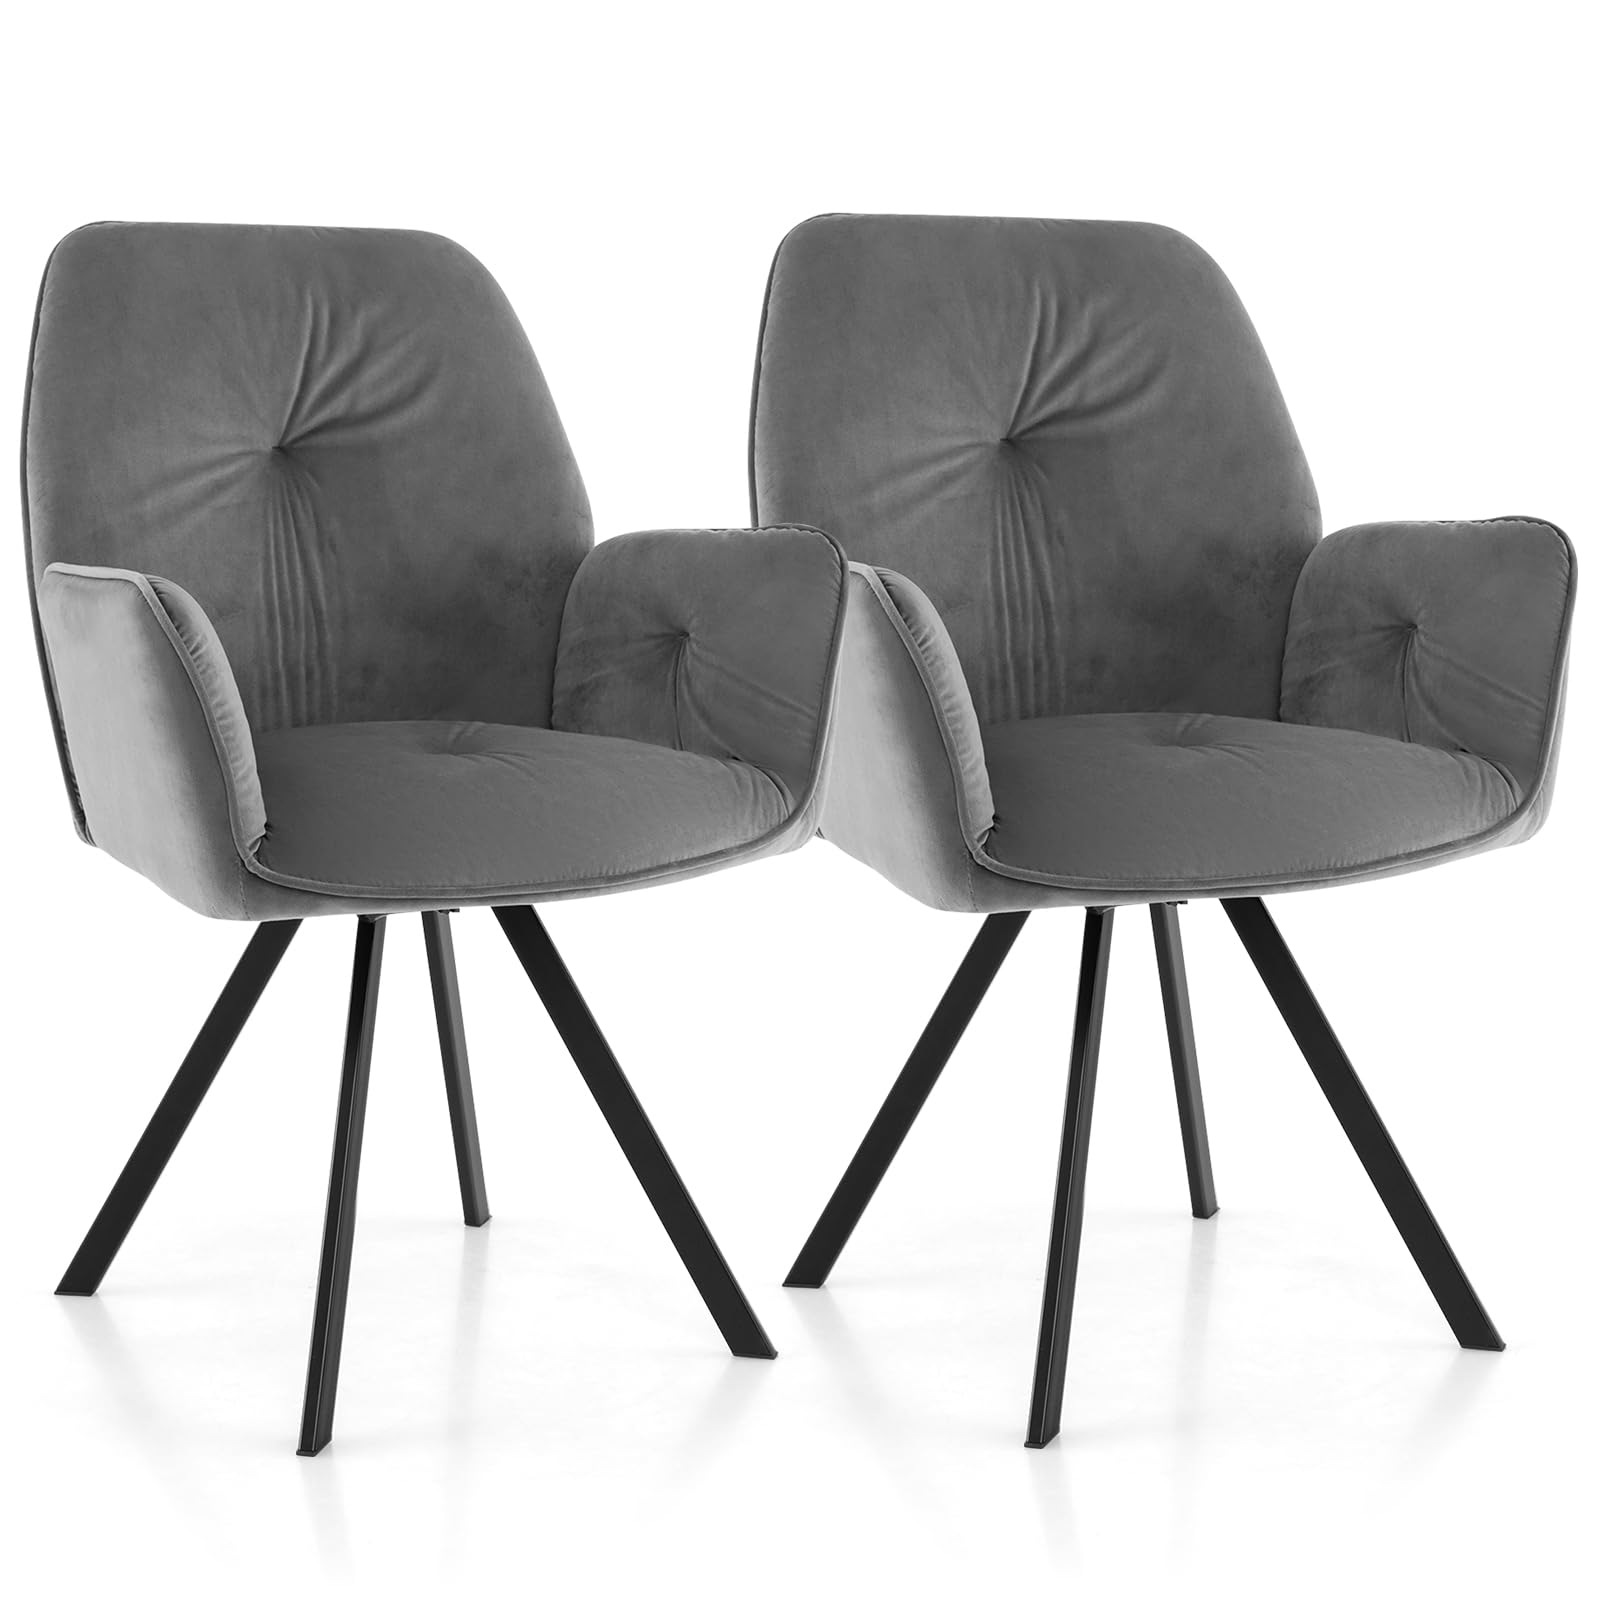 Giantex Upholstered Swivel Velvet Accent Chair Set of 2